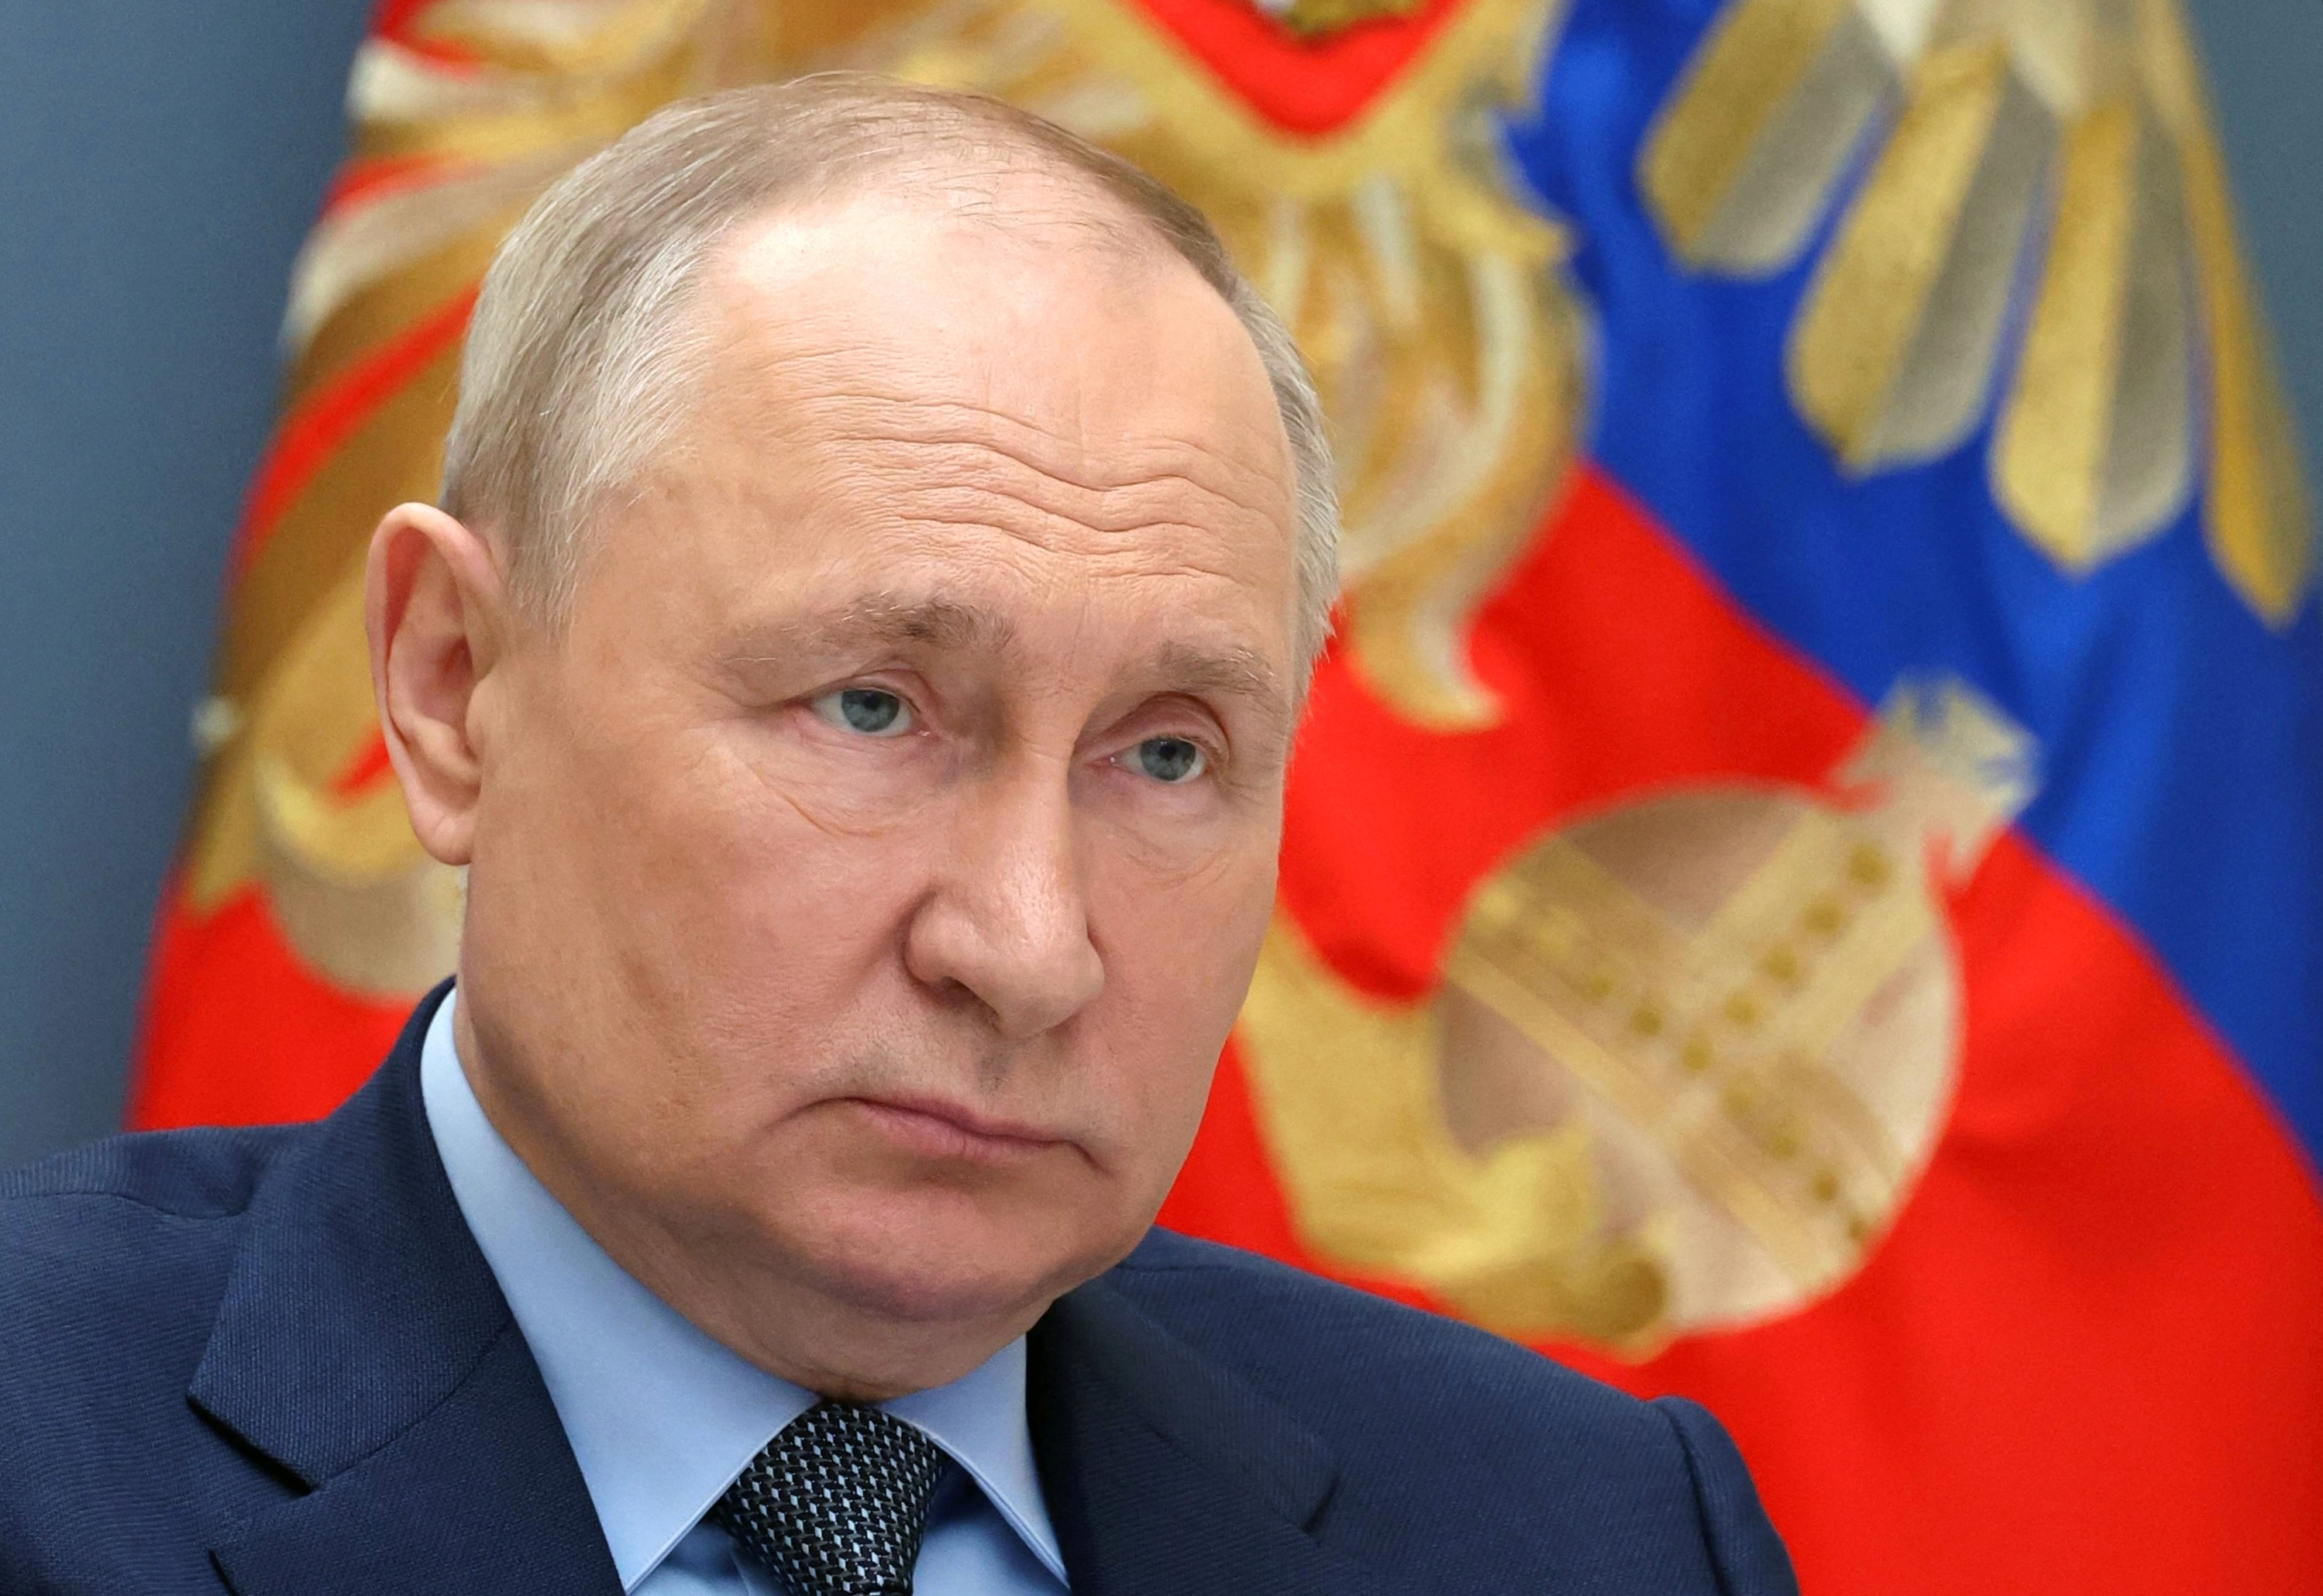 ウクライナ戦争の「悲劇」停止の方策考える必要、プーチン氏 Ｇ２０で - ロイター (Reuters Japan)